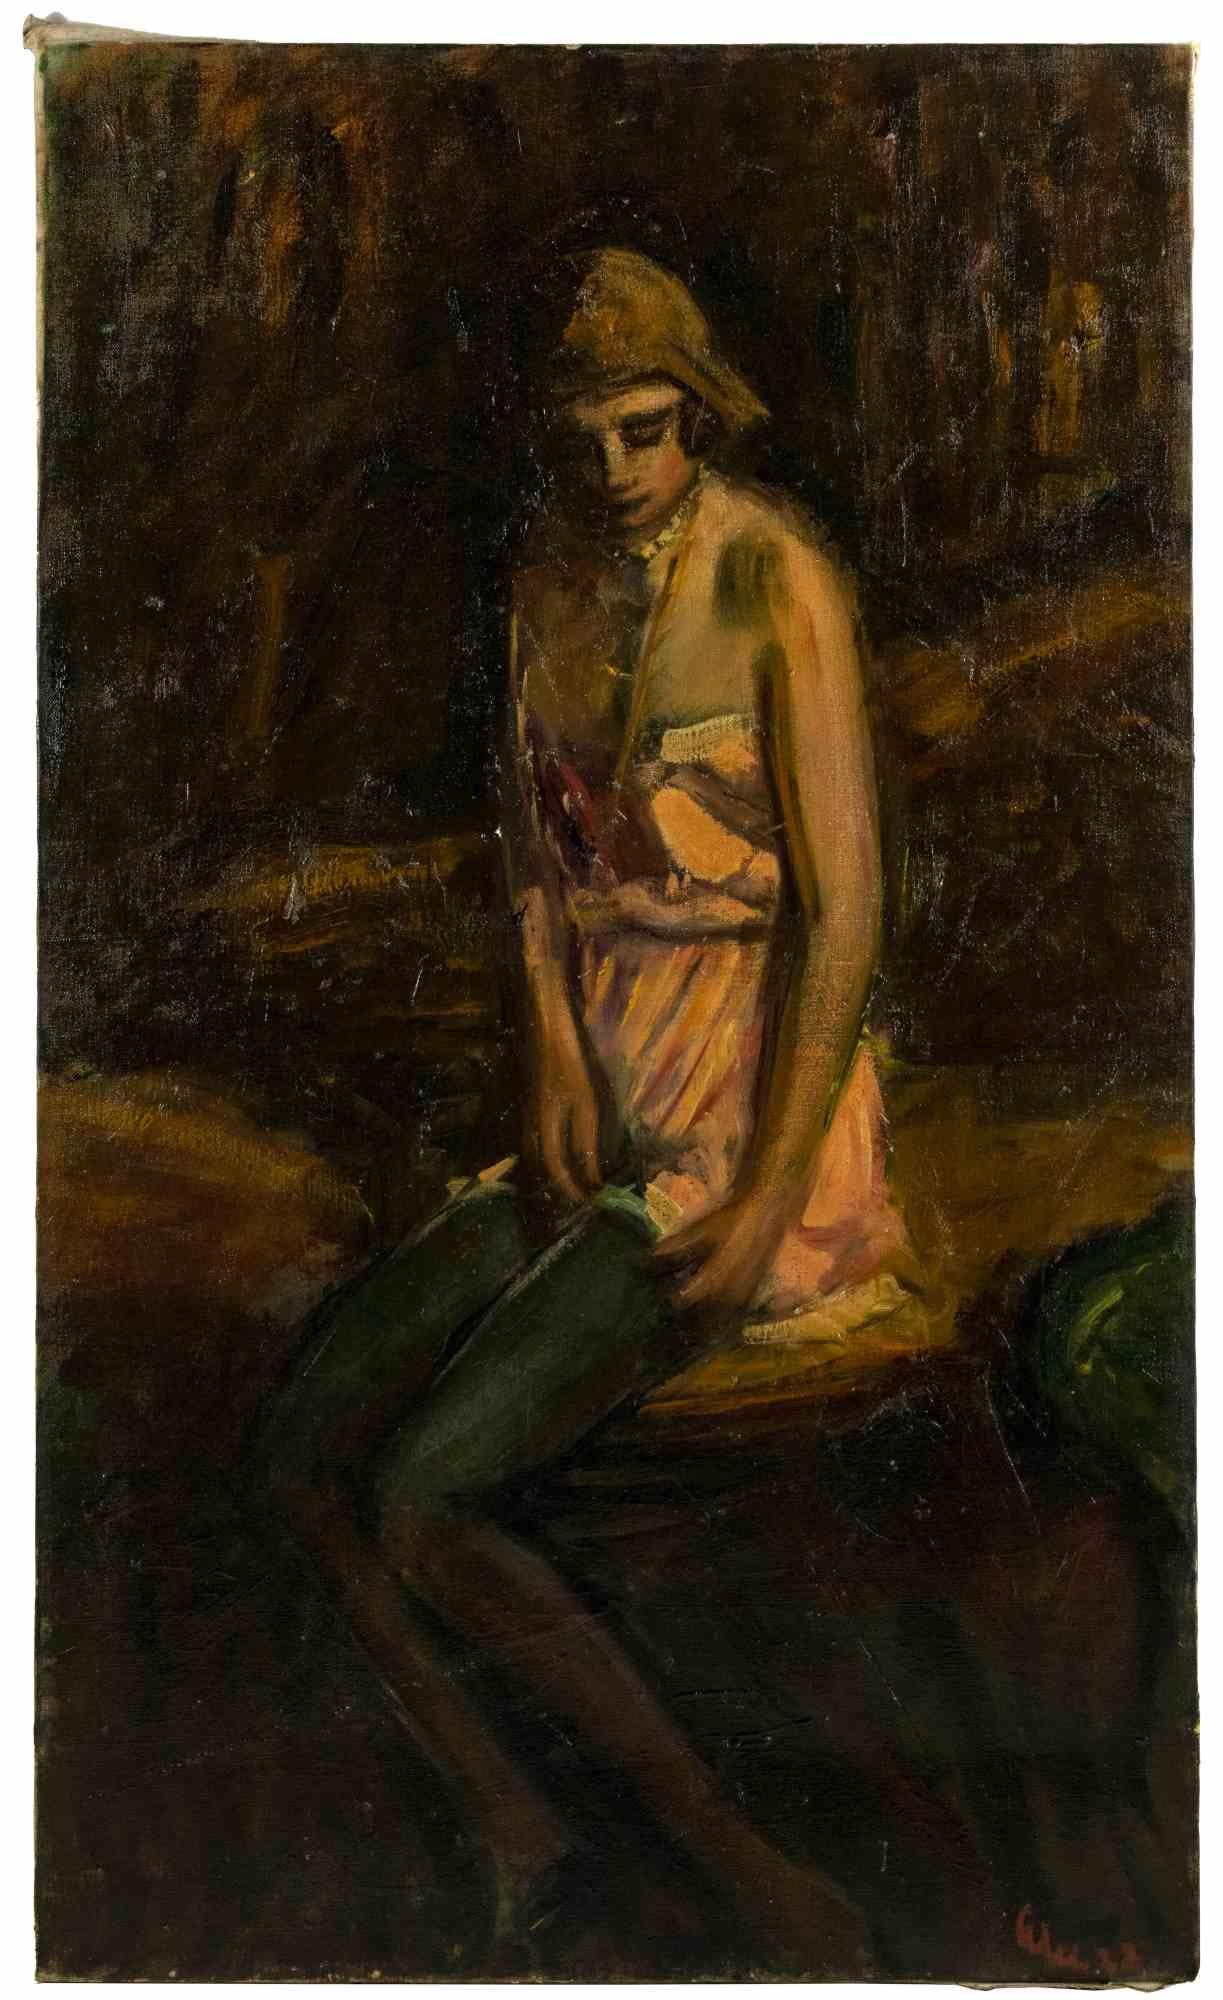 Die Frau ist ein originelles modernes Kunstwerk von Antonio Feltrinelli aus dem Jahr 1932.

Gemischte farbige Ölgemälde auf Leinwand.

Handsigniert und datiert.

Guter Zustand.

Antonio Feltrinelli (Mailand, 1887 - Gargnano, 1942)
Er wurde am 1.